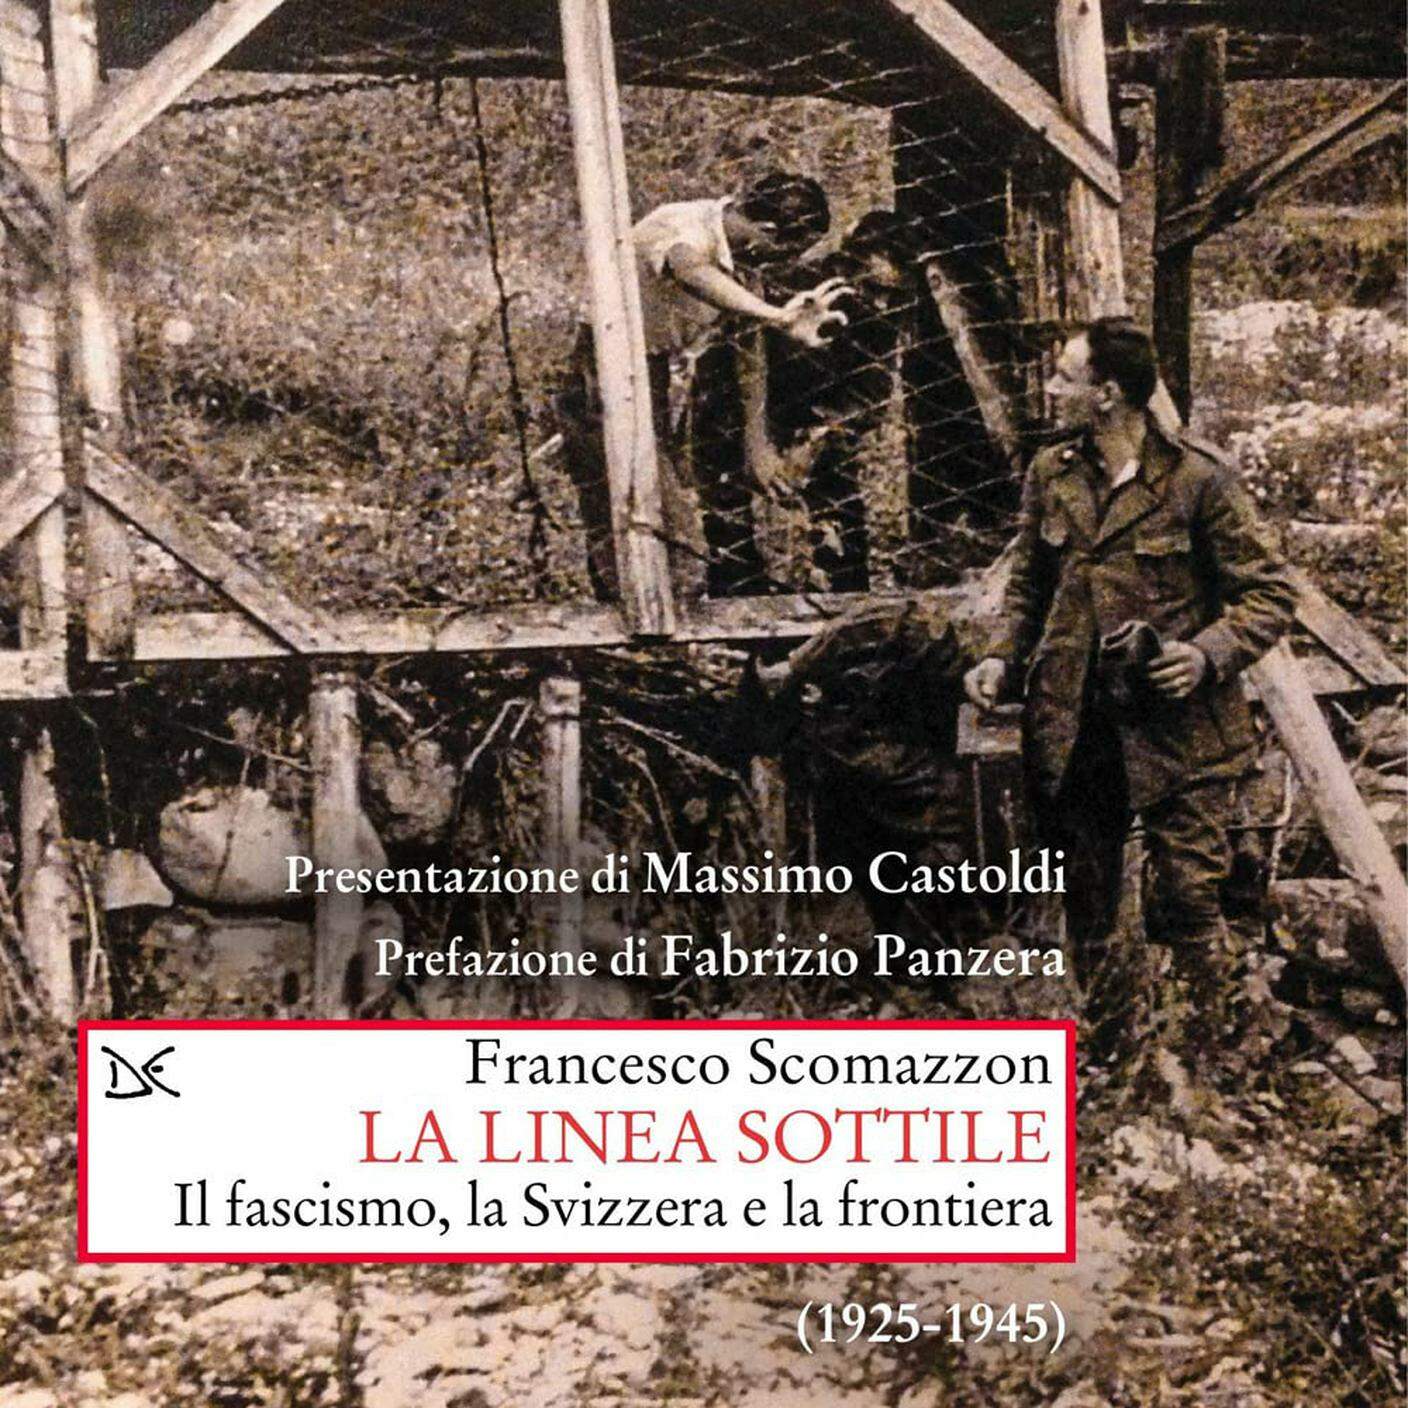 "La linea sottile. Il fascismo, la Svizzera e la frontiera (1925-1945)" di Francesco Scomazzon, Donzelli (dettaglio di copertina)